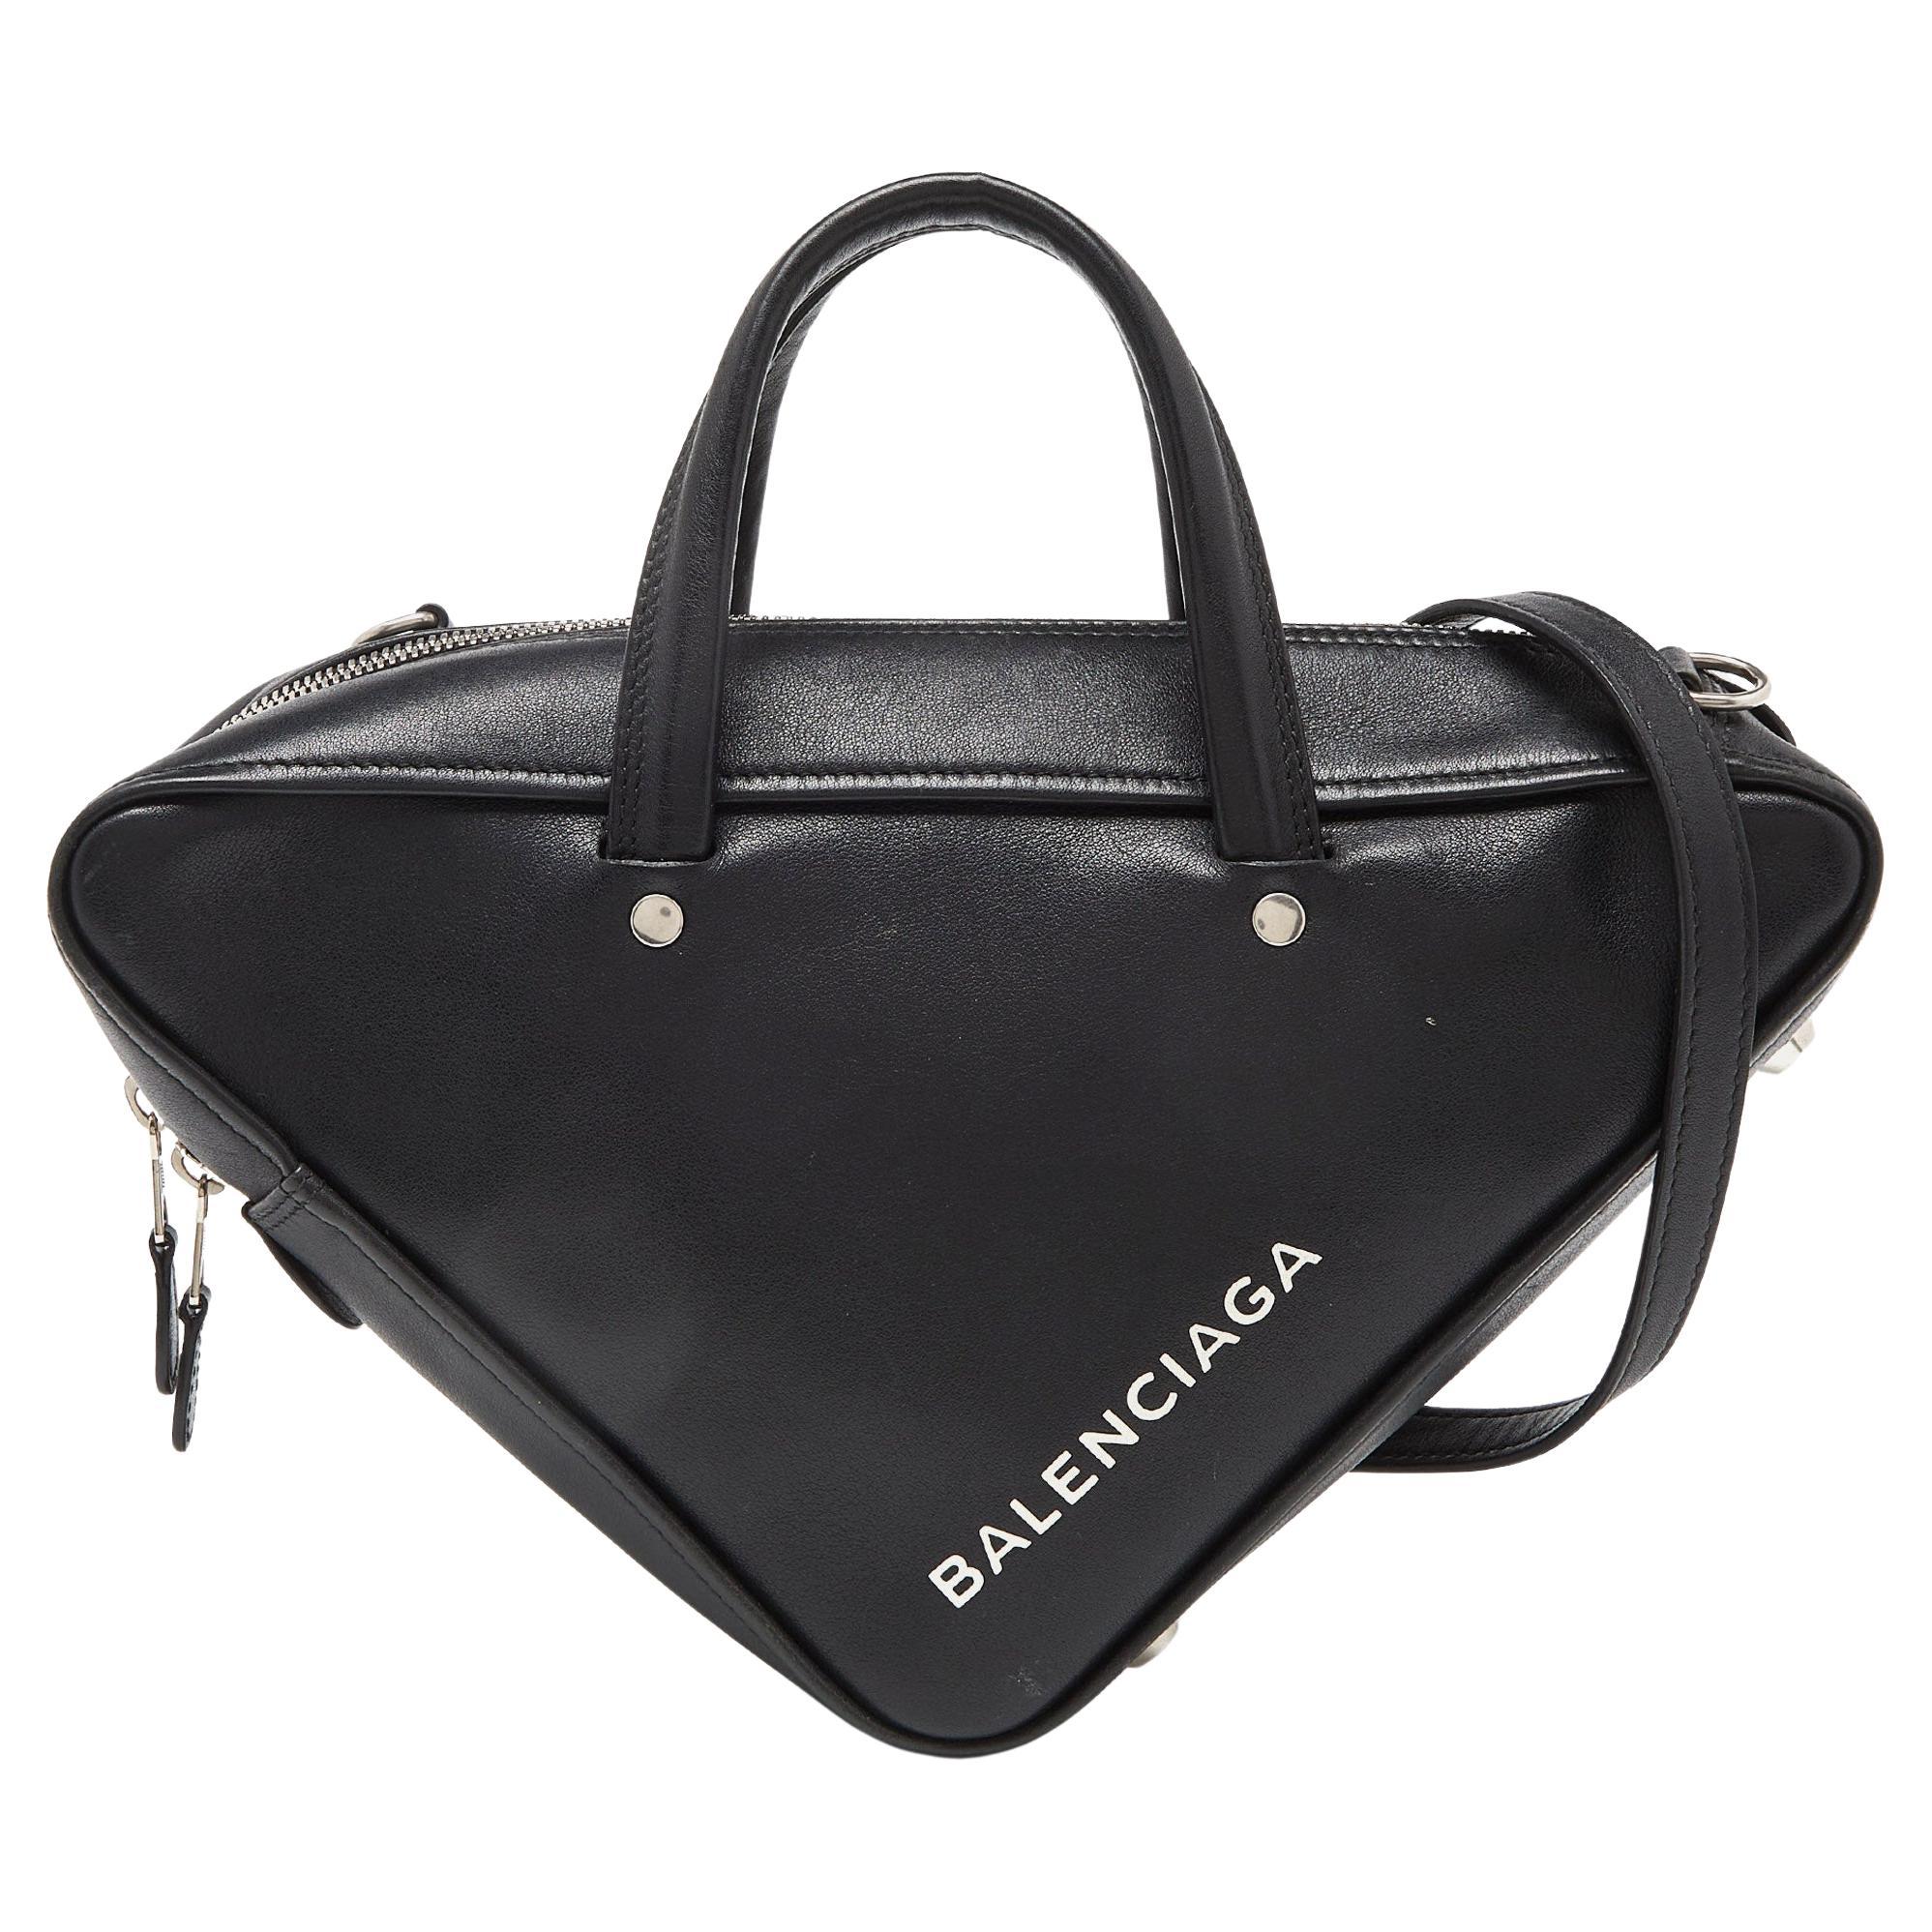 Balenciaga Black Leather Small Triangle Duffle Bag